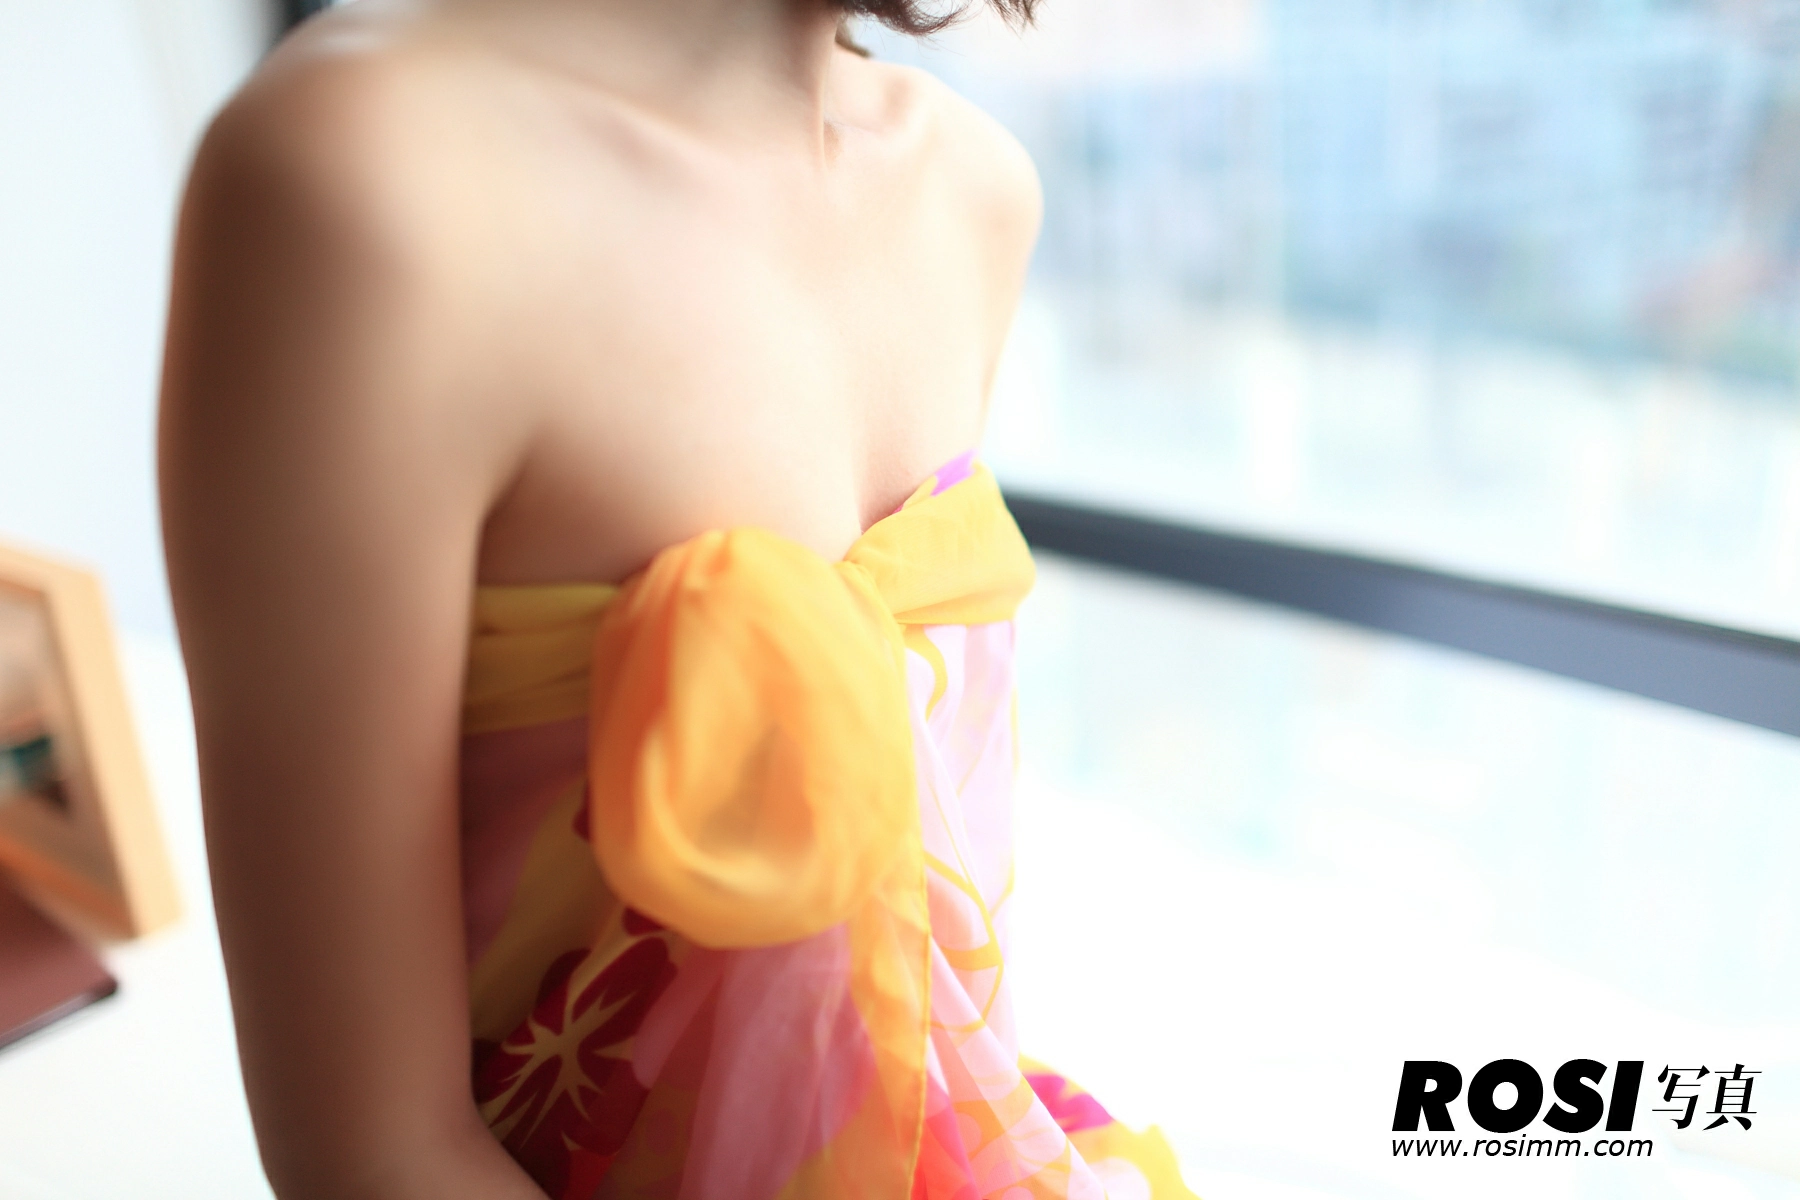 [ROSI写真]No.120 酒店清纯少女 红色睡衣加内裤性感私房写真集,